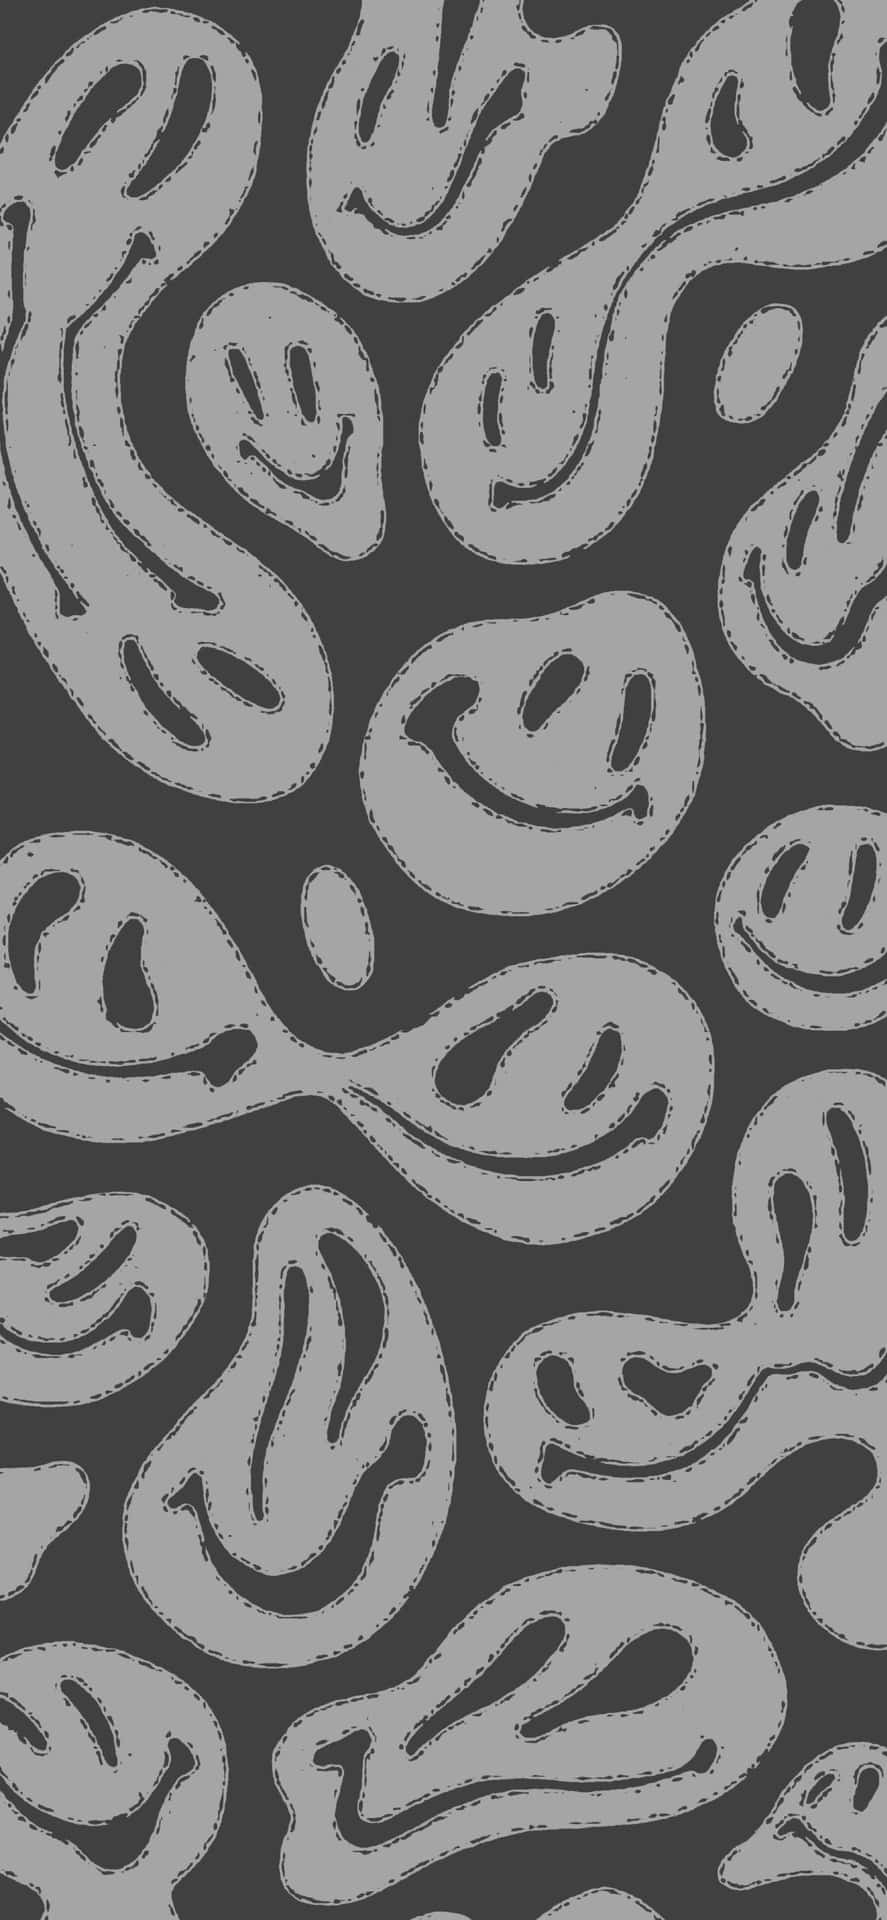 Trippy Smiley Face Patterni Phone Wallpaper Wallpaper